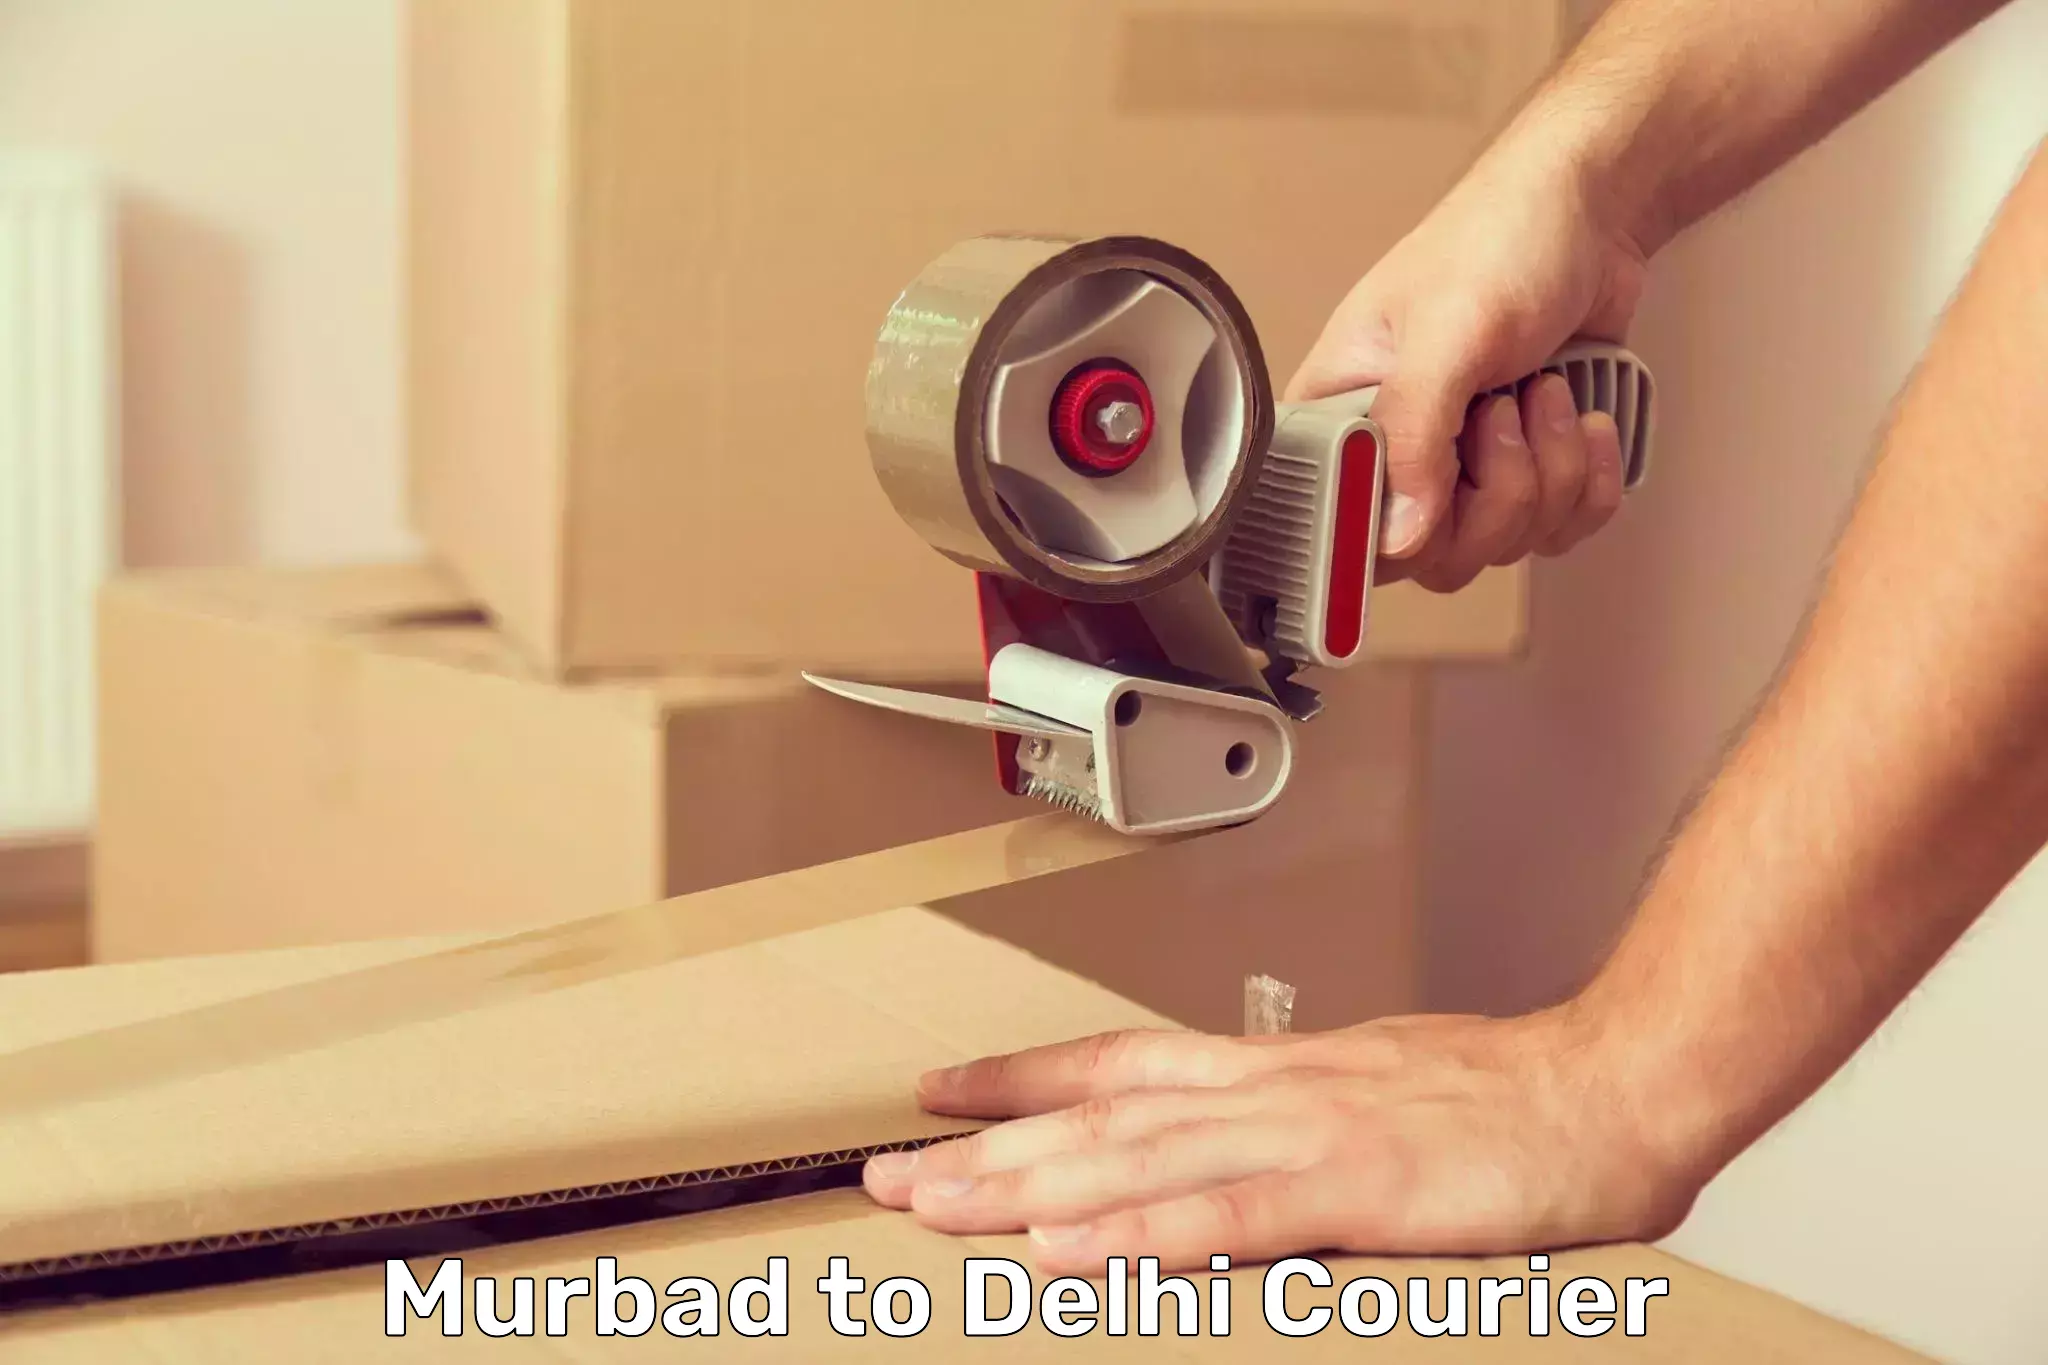 Cash on delivery service Murbad to Delhi